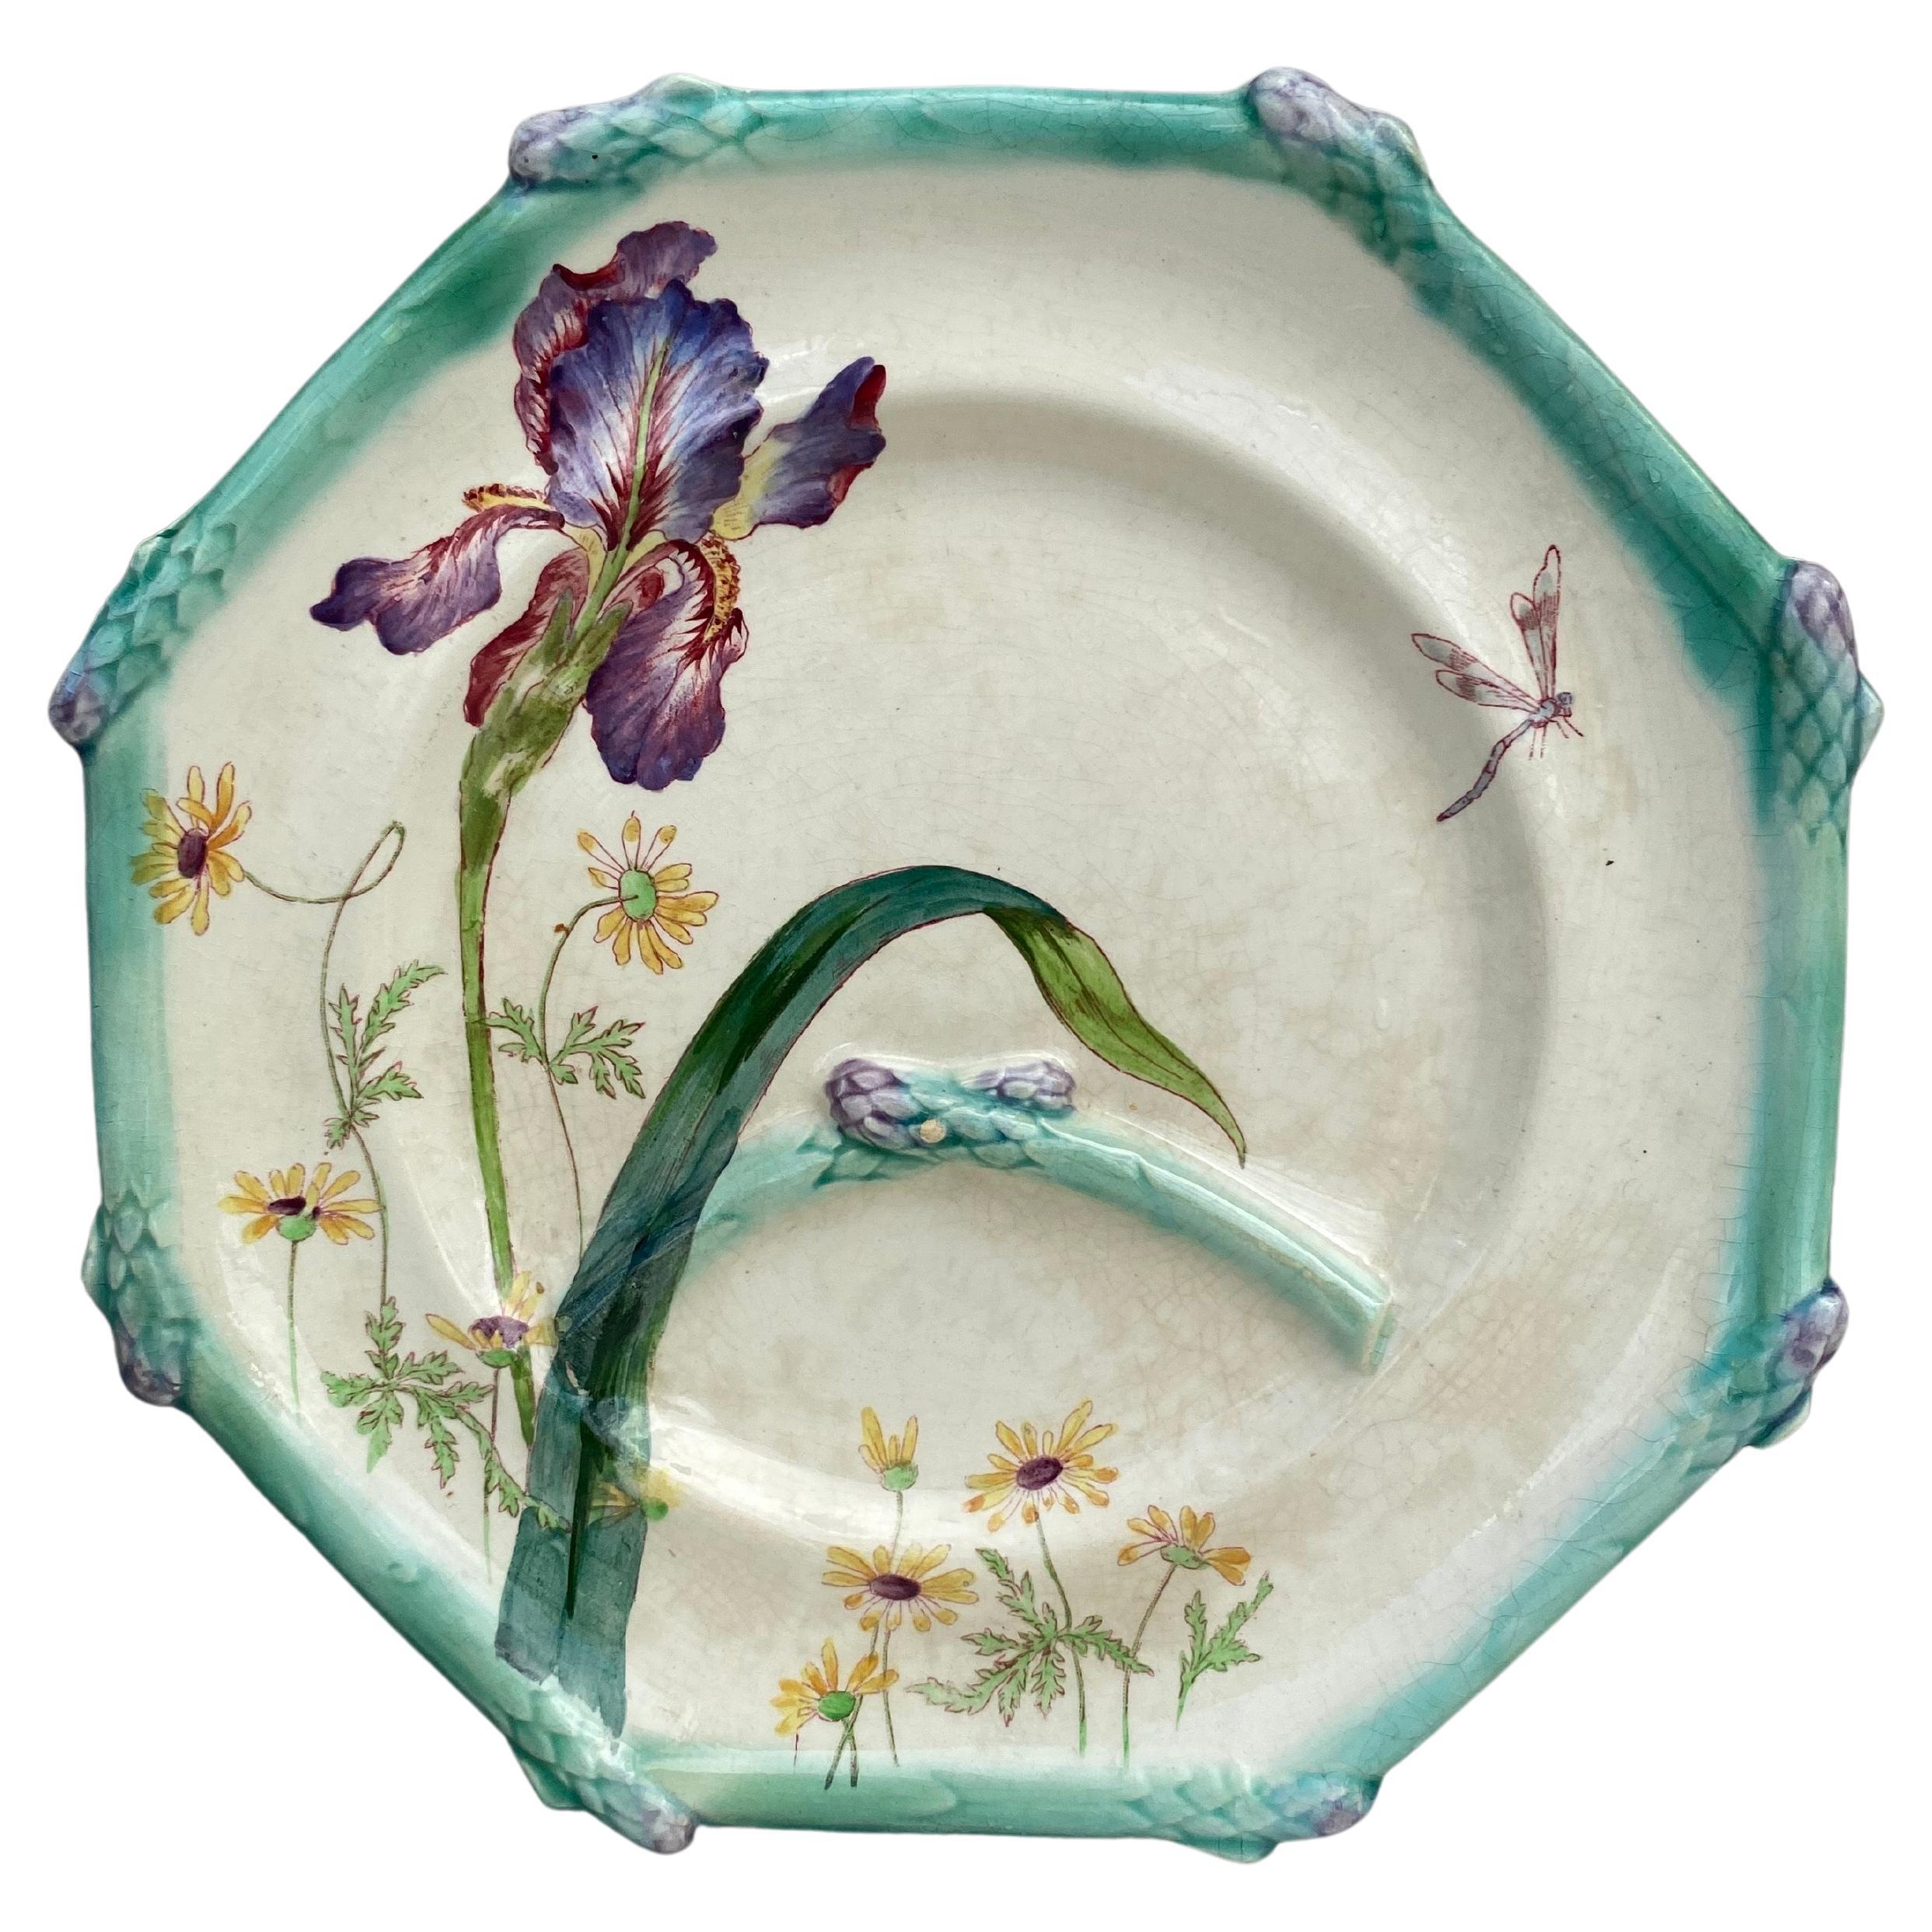 Assiette à asperges Iris Longchamp du 19ème siècle